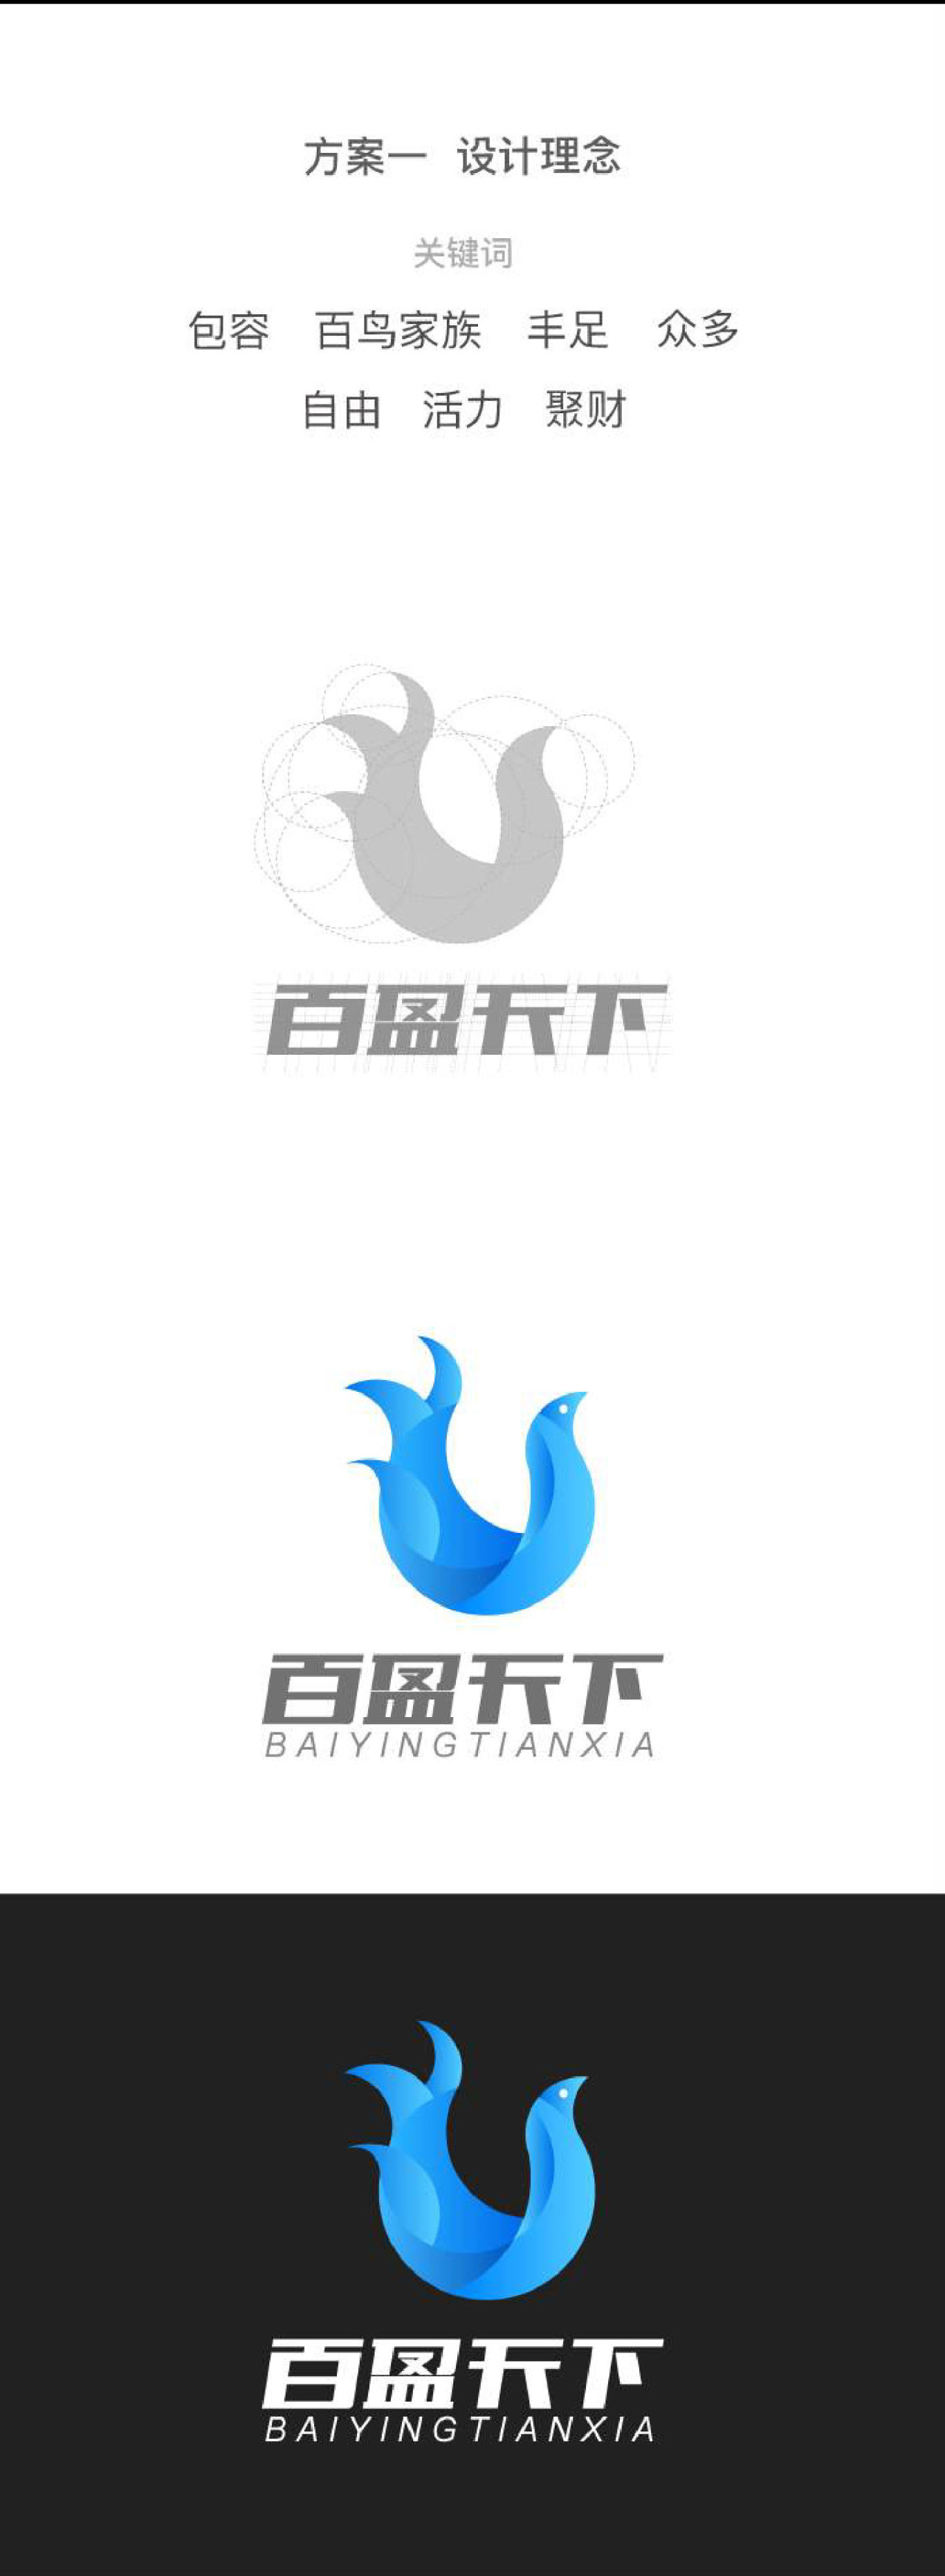 互联网公司logo设计图0